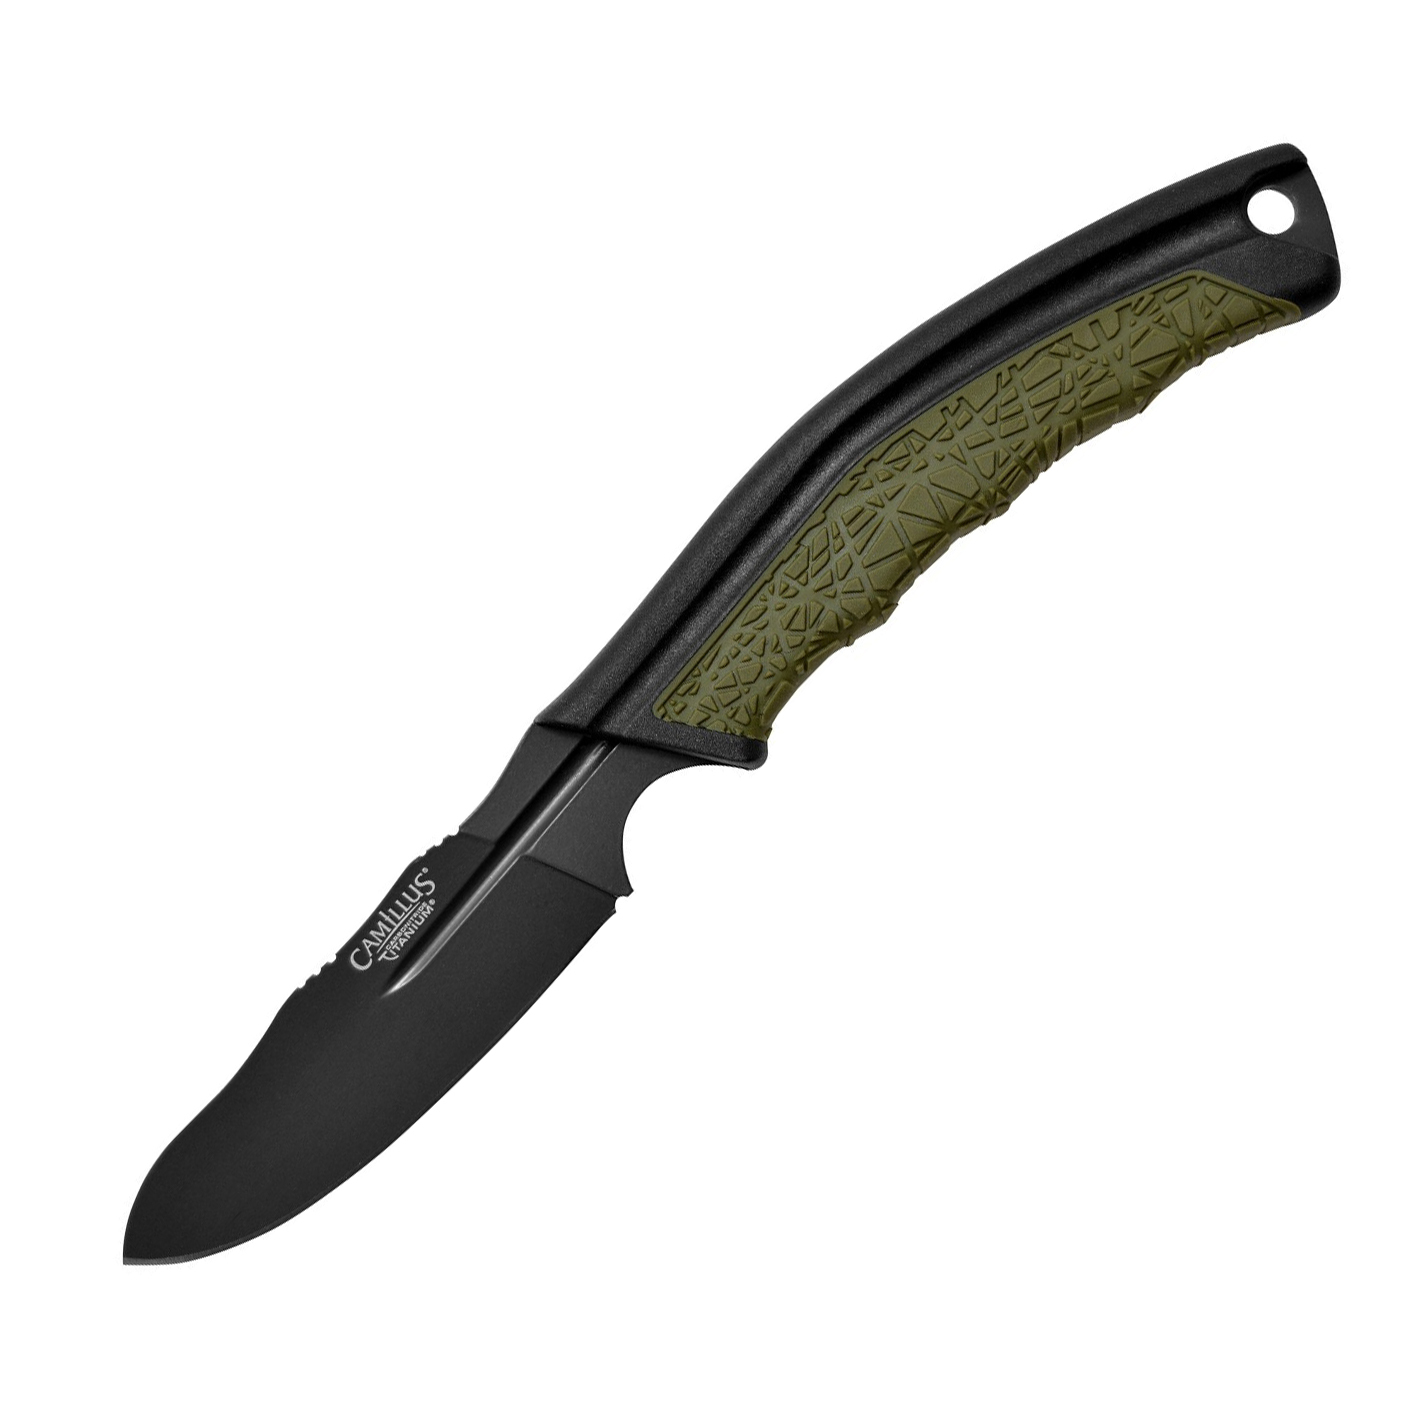 Нож с фиксированным клинком Camillus BT-8.5, сталь AUS-8, рукоять термопластик GFN, зеленый нож с фиксированным клинком ontario rd4 micarta серрейтор